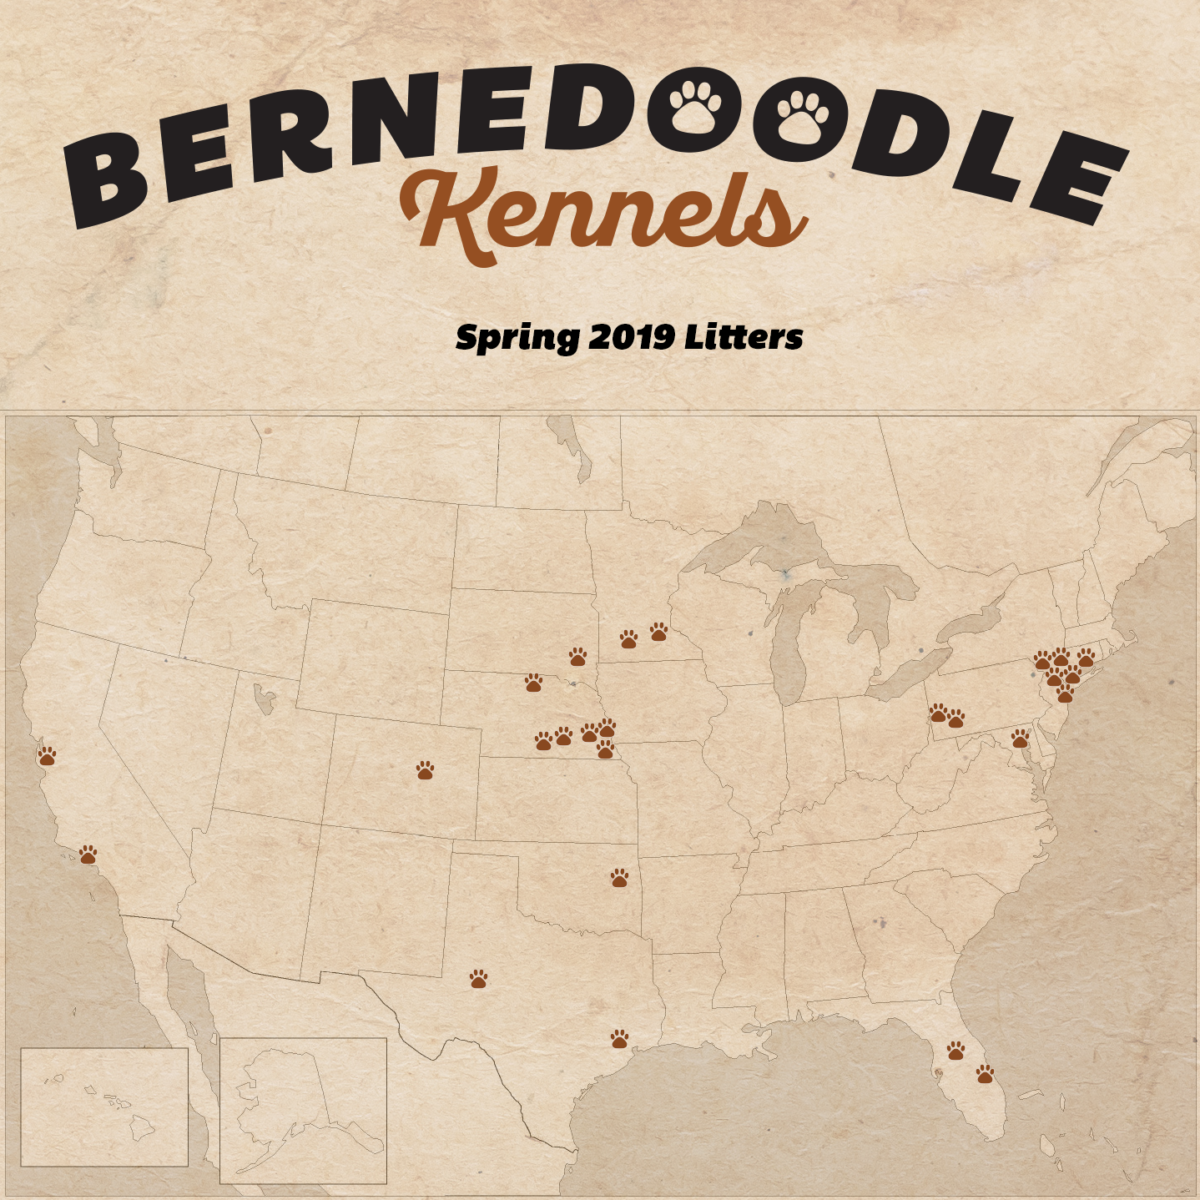 Bernedoodle Kennels - Spring 2019 Litters